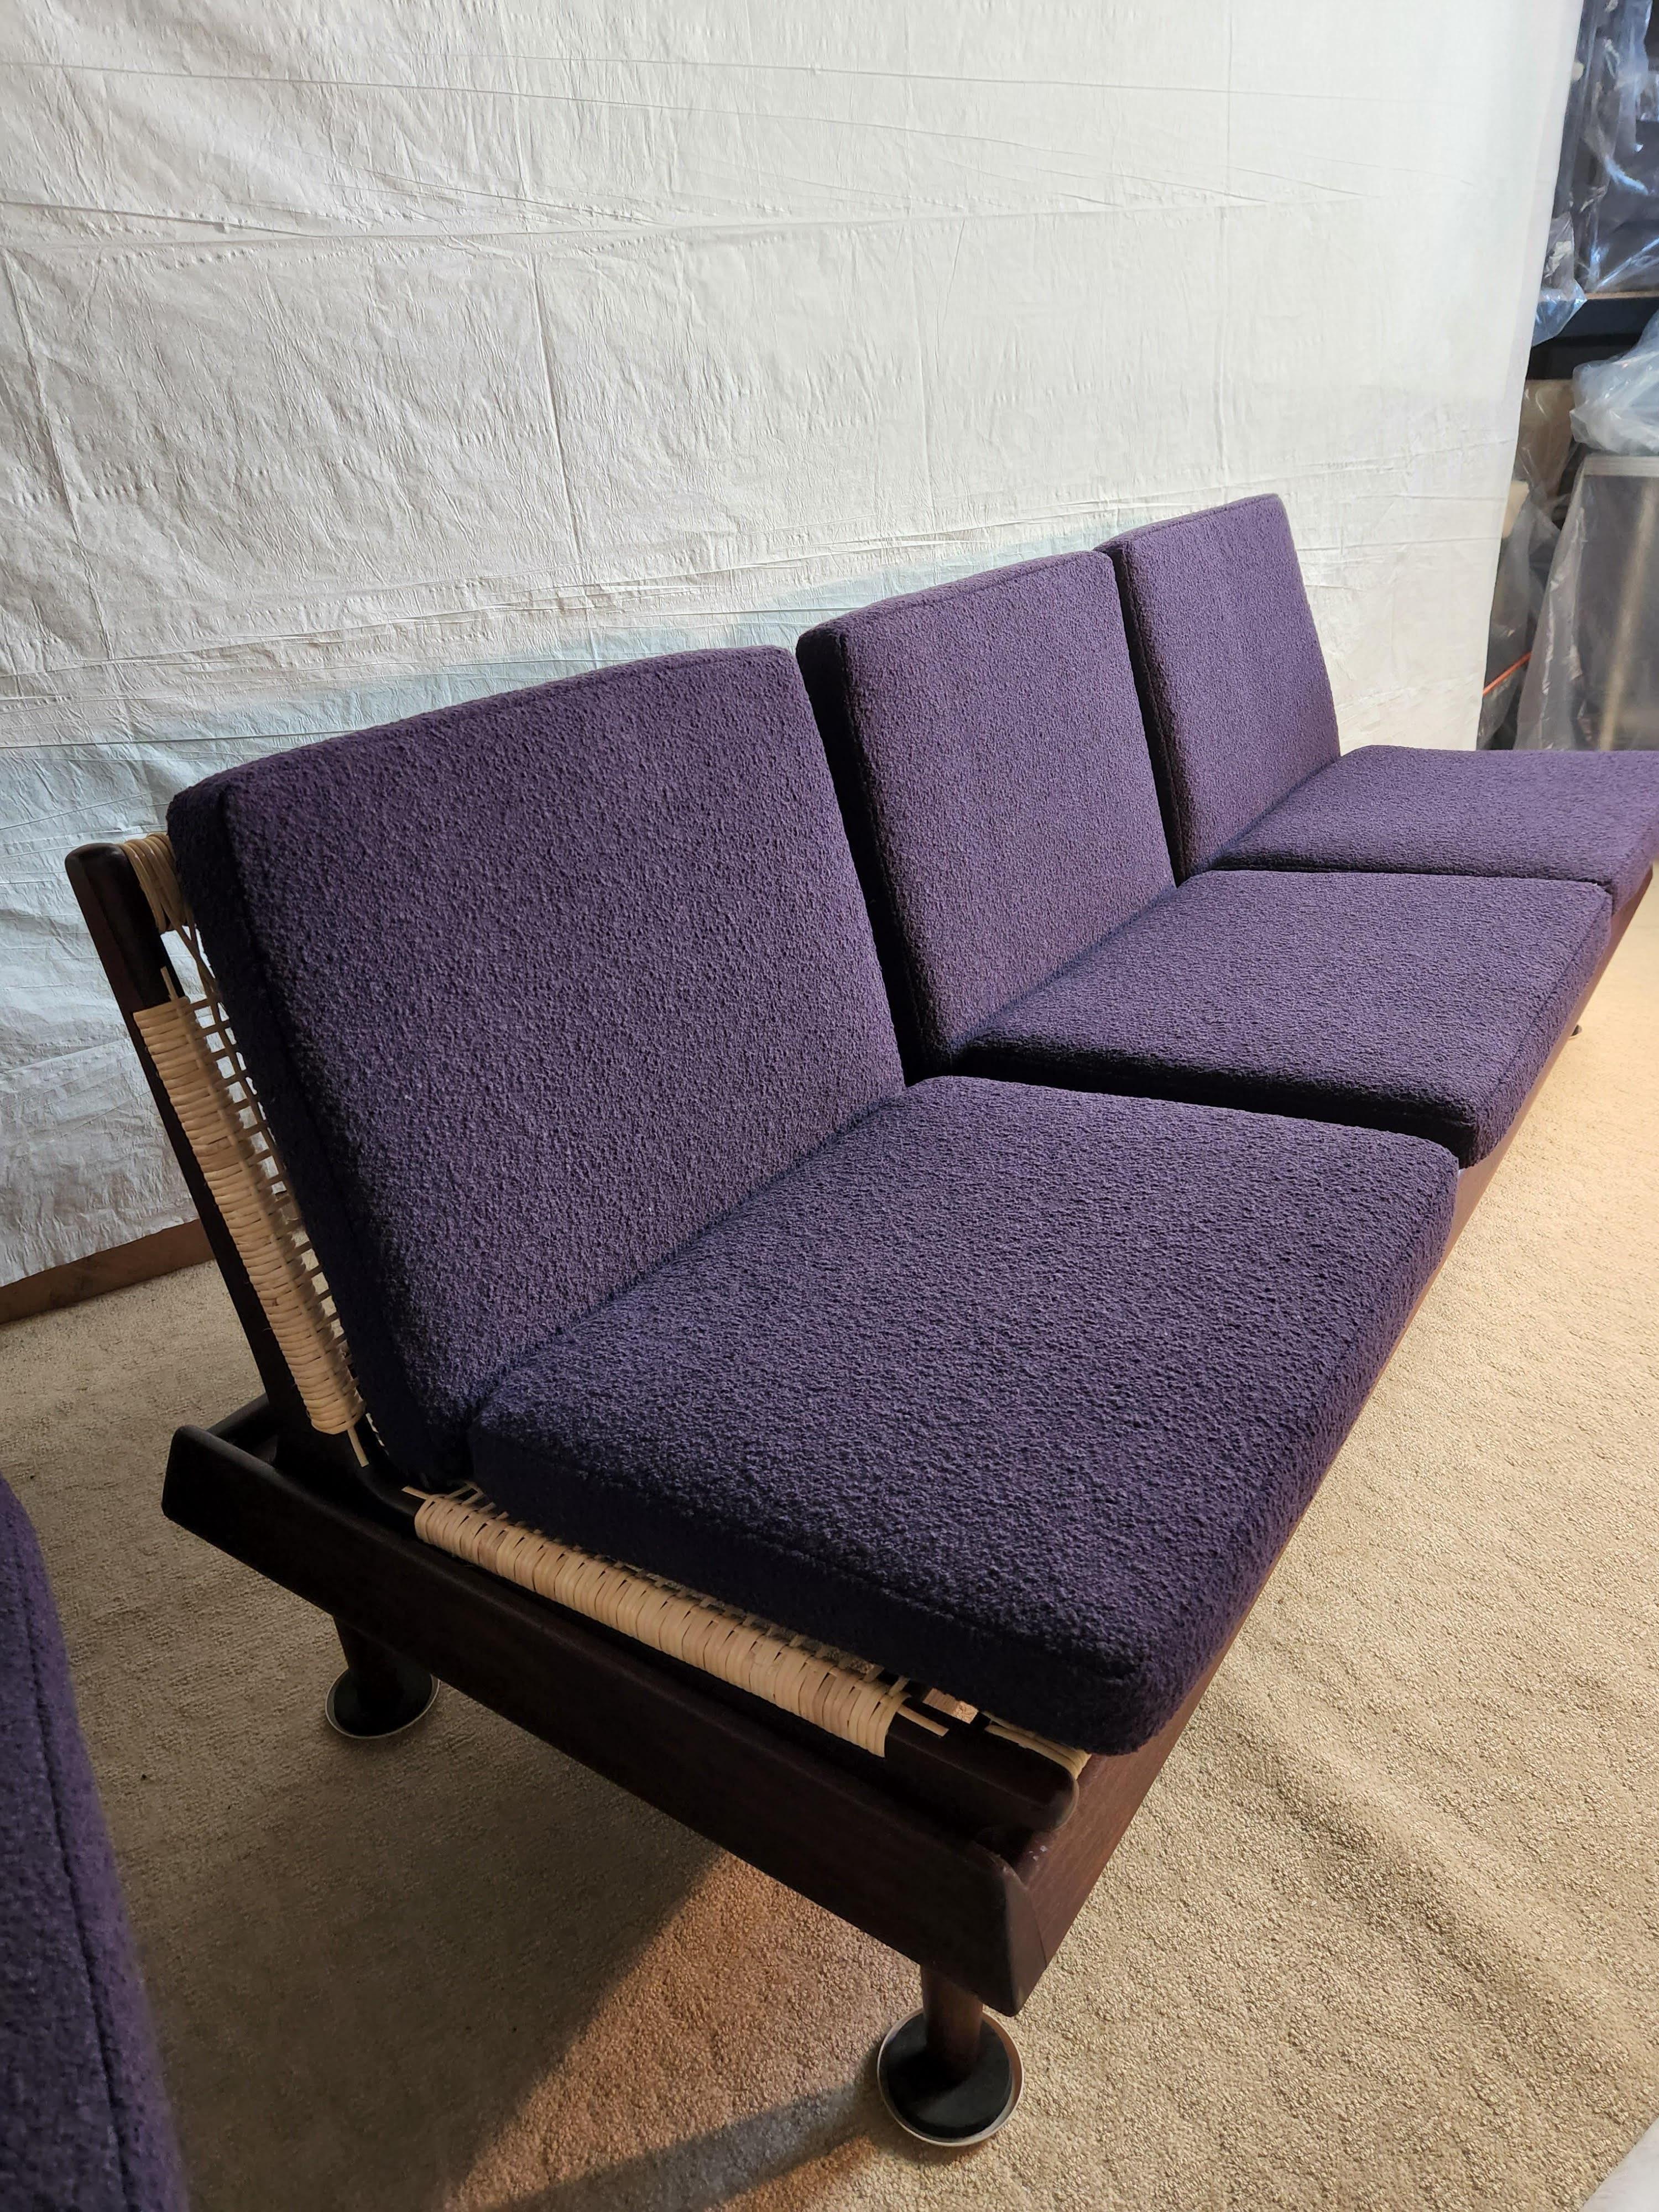 Sièges modulaires Hans Olsen en teck pour la société danoise Bramin, date de conception 1957, composés de 2 bancs avec 4 sièges cannés et d'une table basse qui peut être placée de plusieurs façons.
Un exemple a été utilisé dans l'étude de cas de la